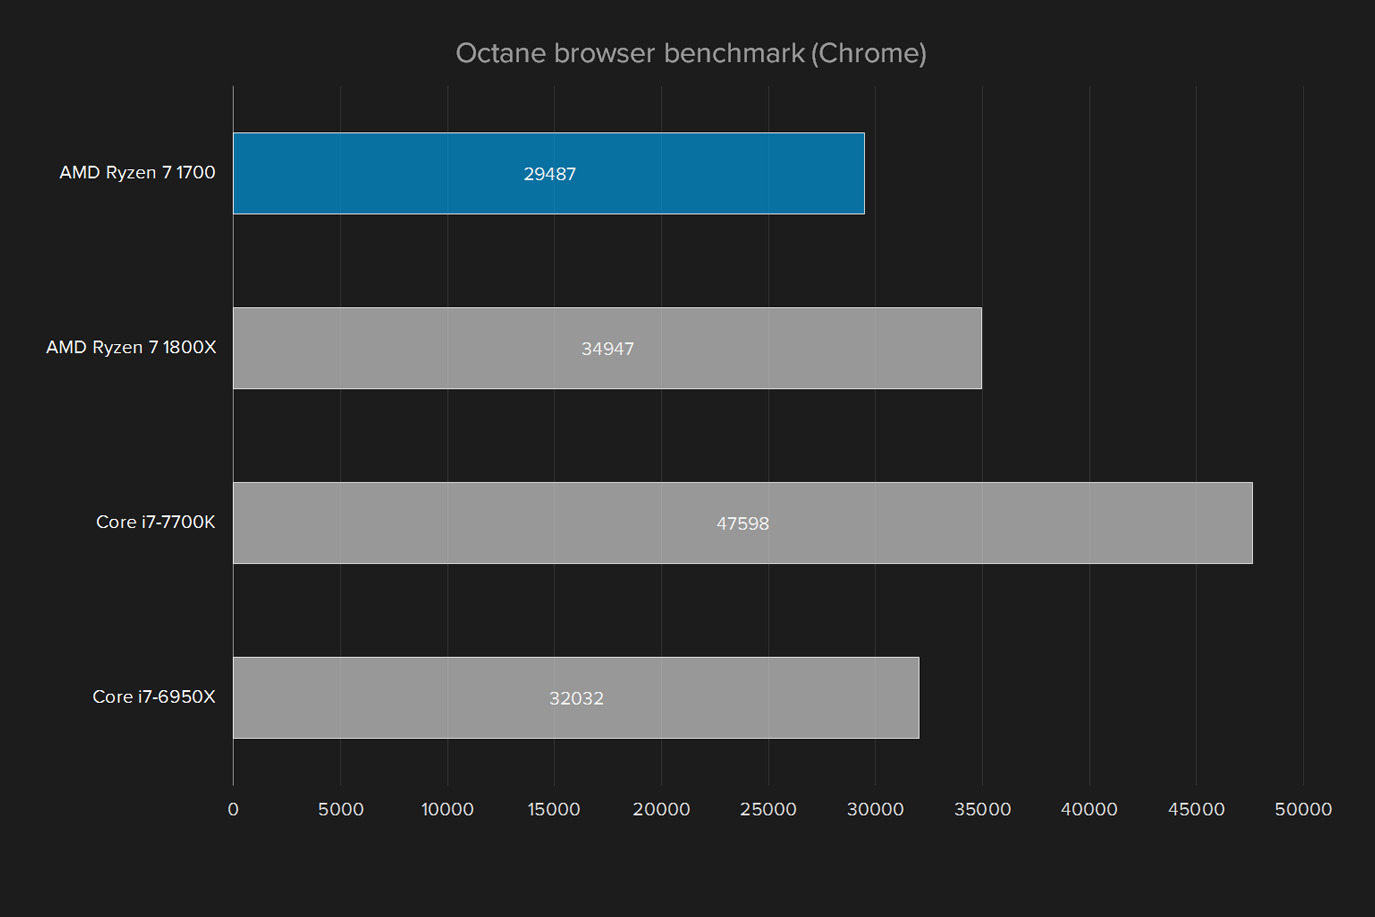 amd ryzen 7 1700 review octane browser